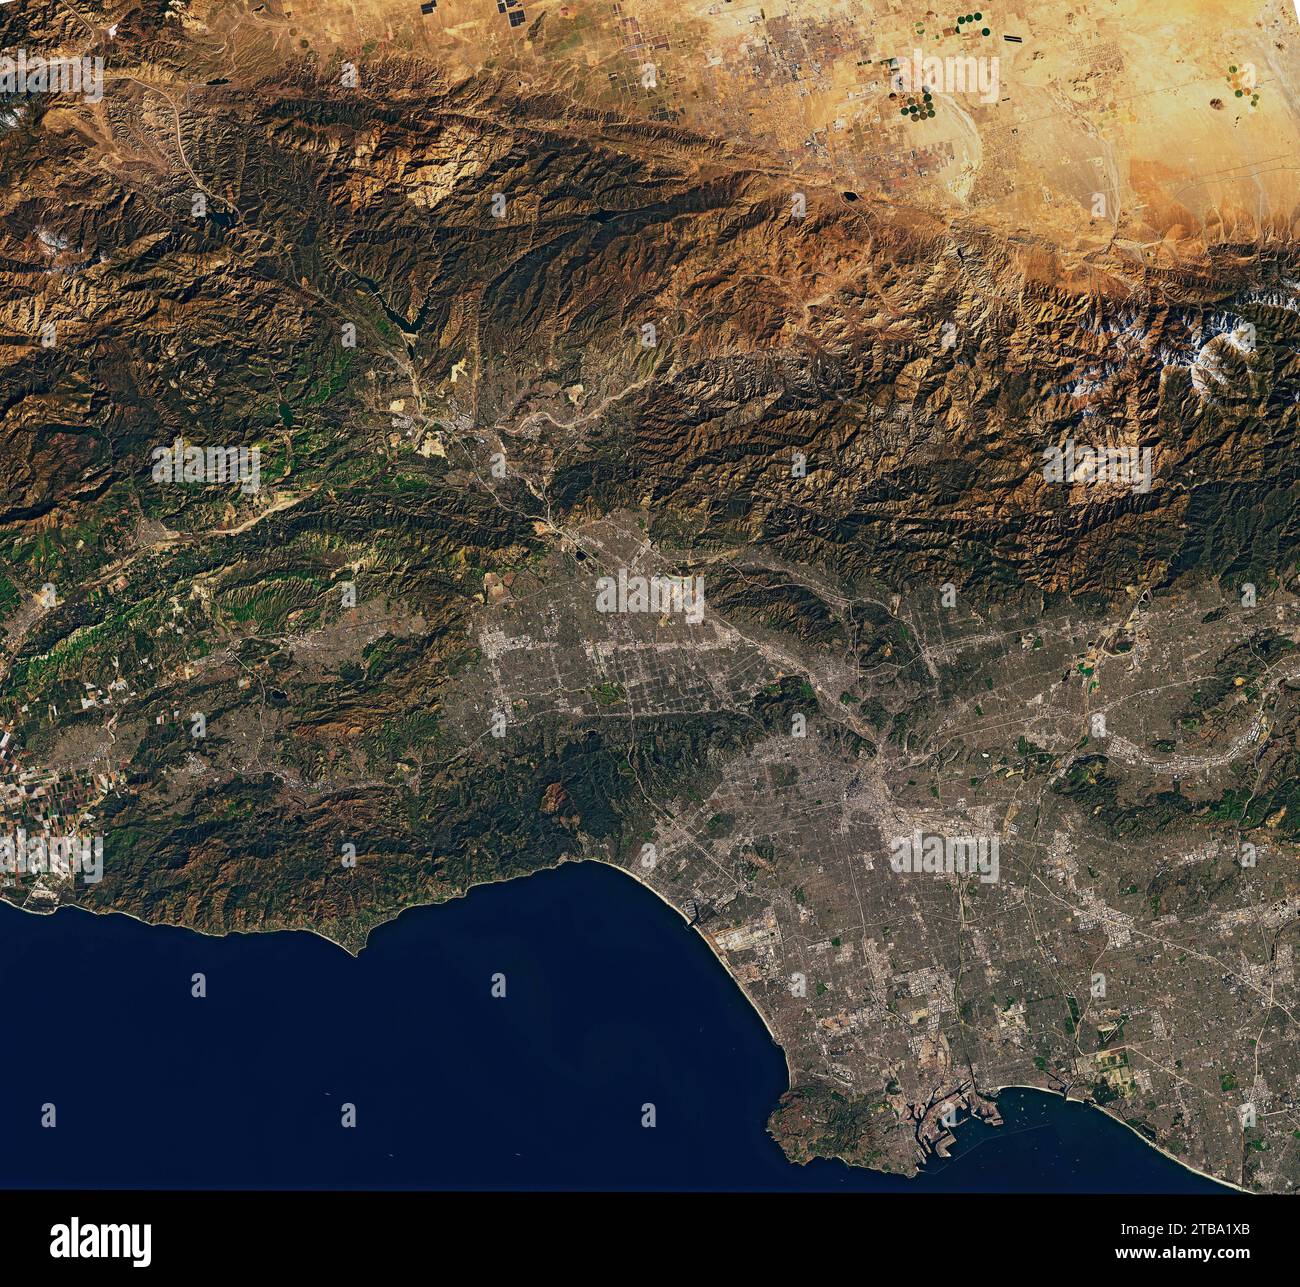 Vista satelital en color natural de la zona de Los Ángeles en California. Foto de stock